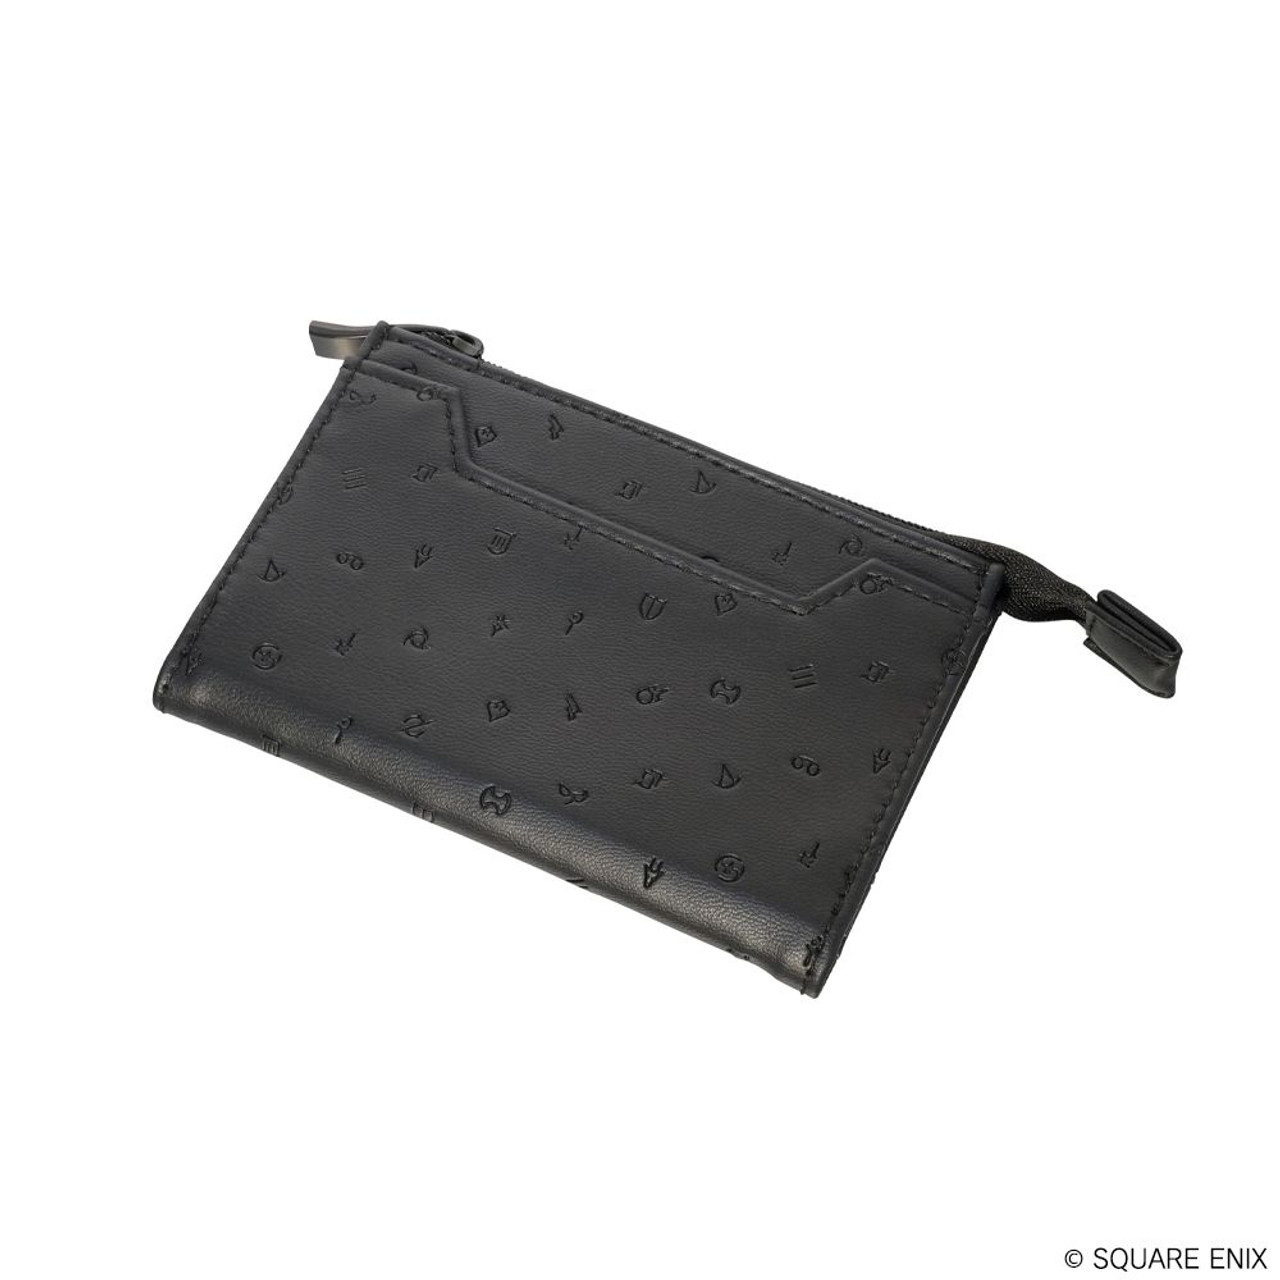 FF Card Holder - Black leather card holder